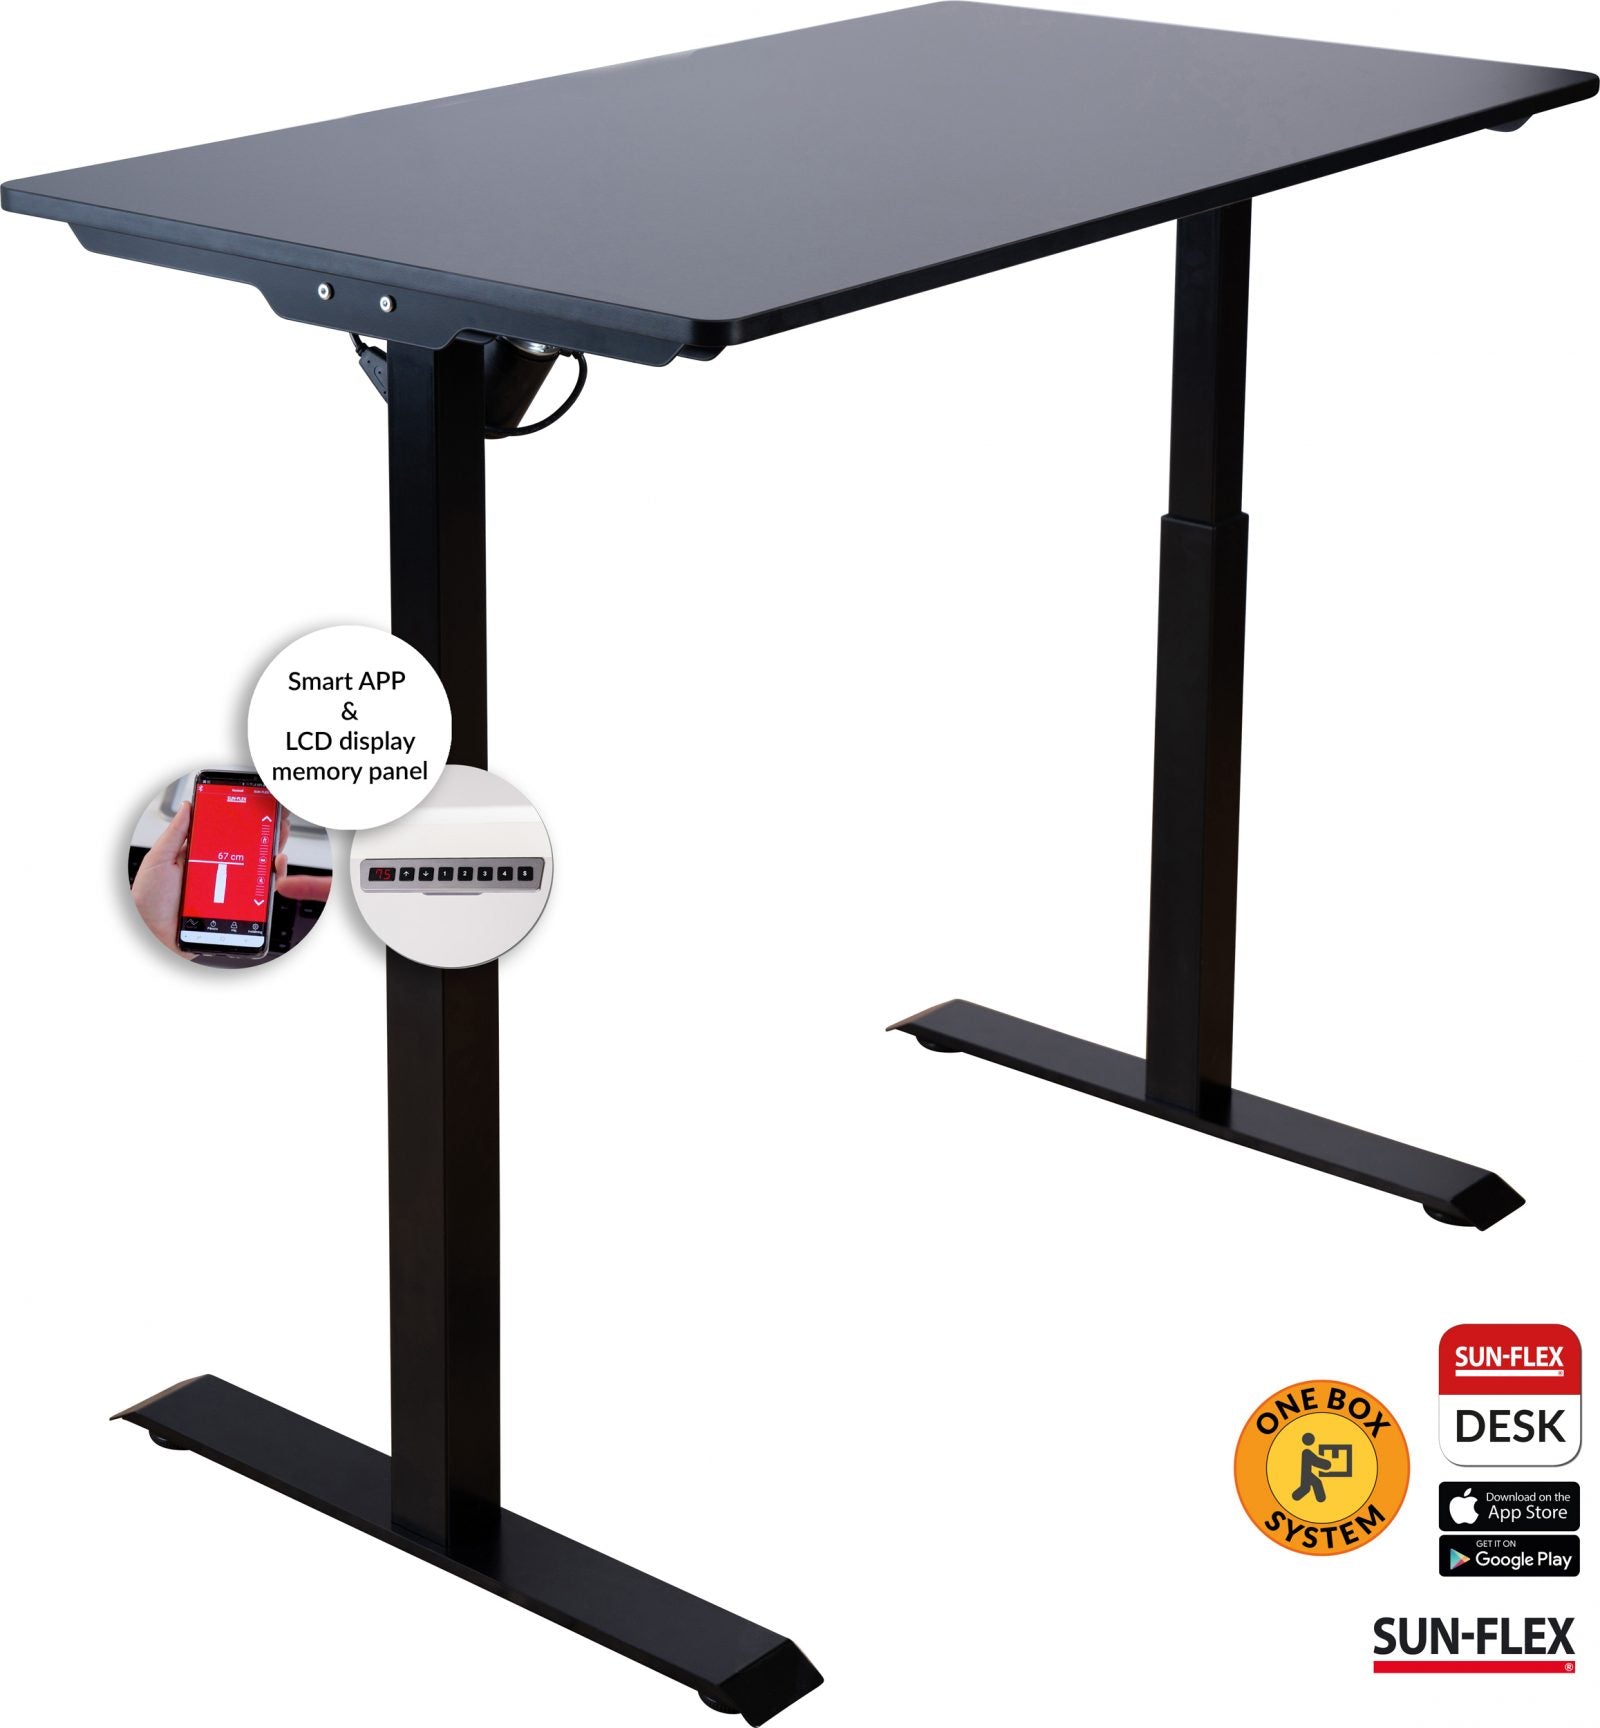 Höj och Sänkbara Skrivbord 120x60cm | Sun-Flex Easydesk Elite